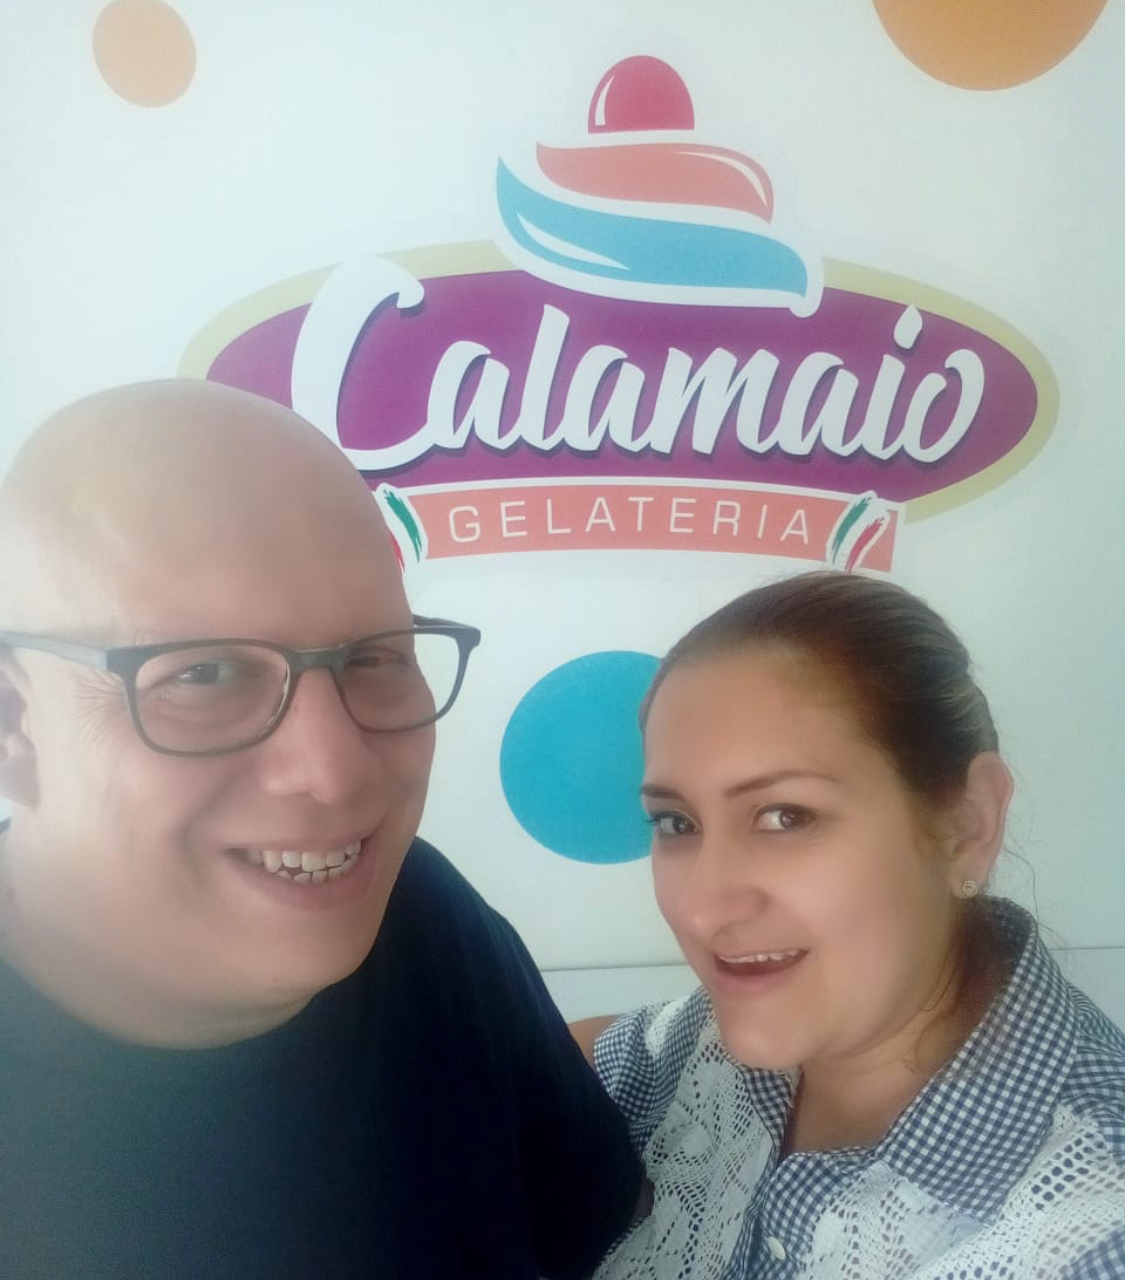 In Colombia tutti pazzi per la brioche dell'ex operaio Fiat Francesco Calamaio